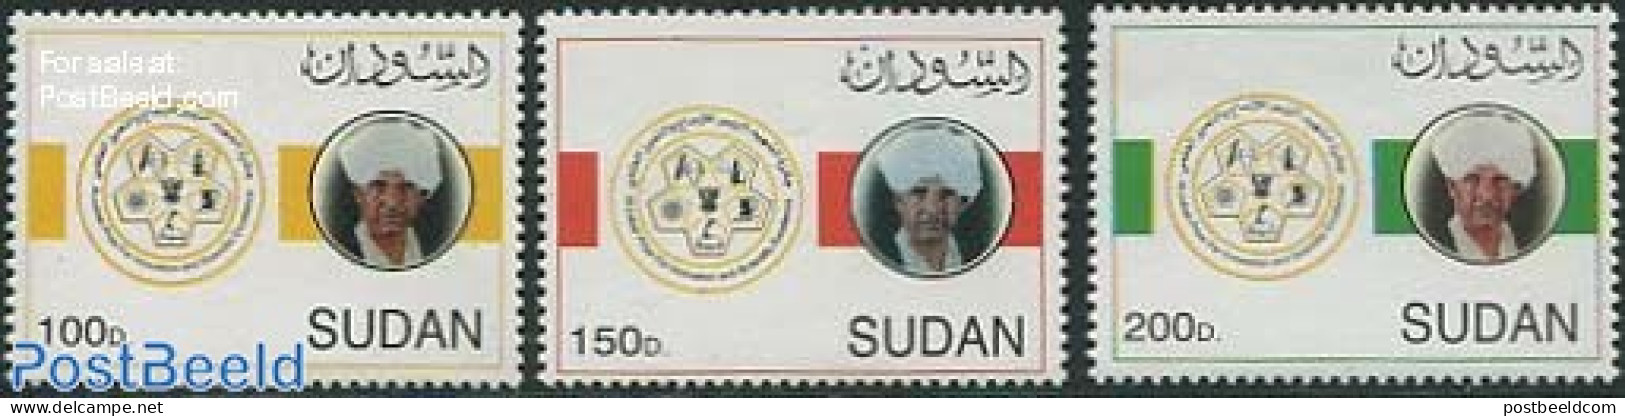 Sudan 2002 Al Zubair Prize 3v, Mint NH - Sudan (1954-...)